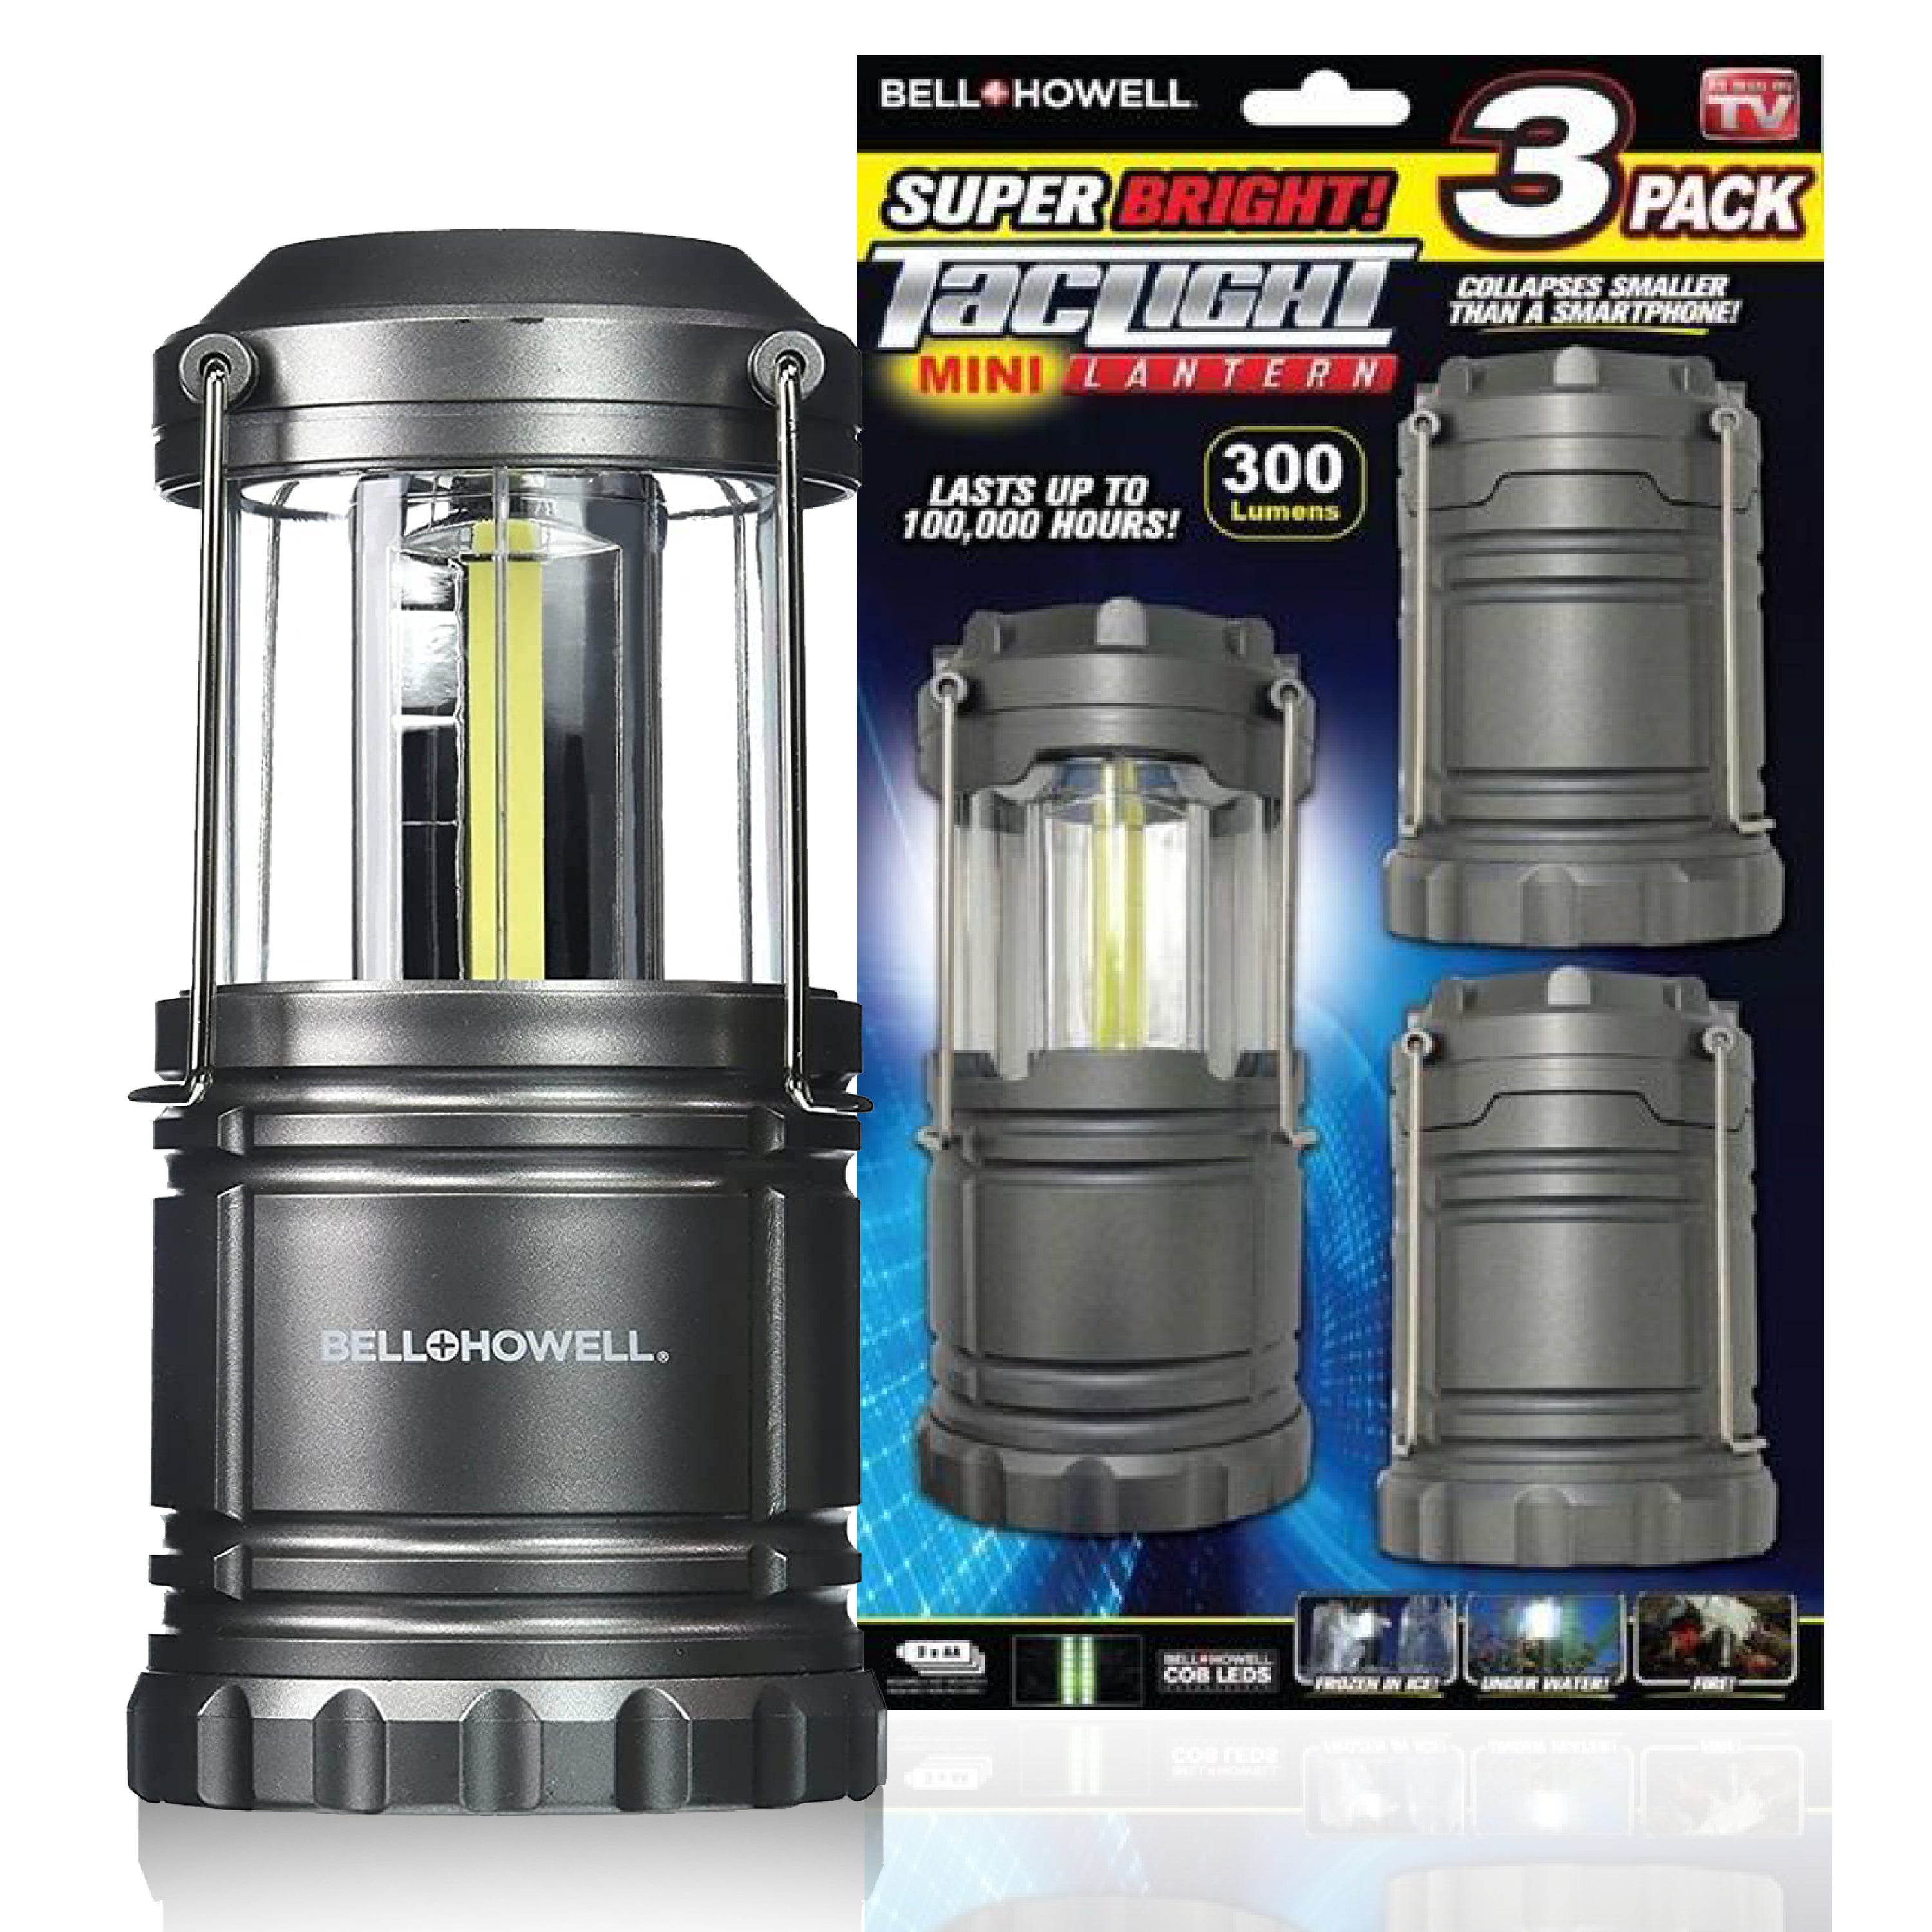 Bell + Howell 4-pack Warm Light Portable Lantern